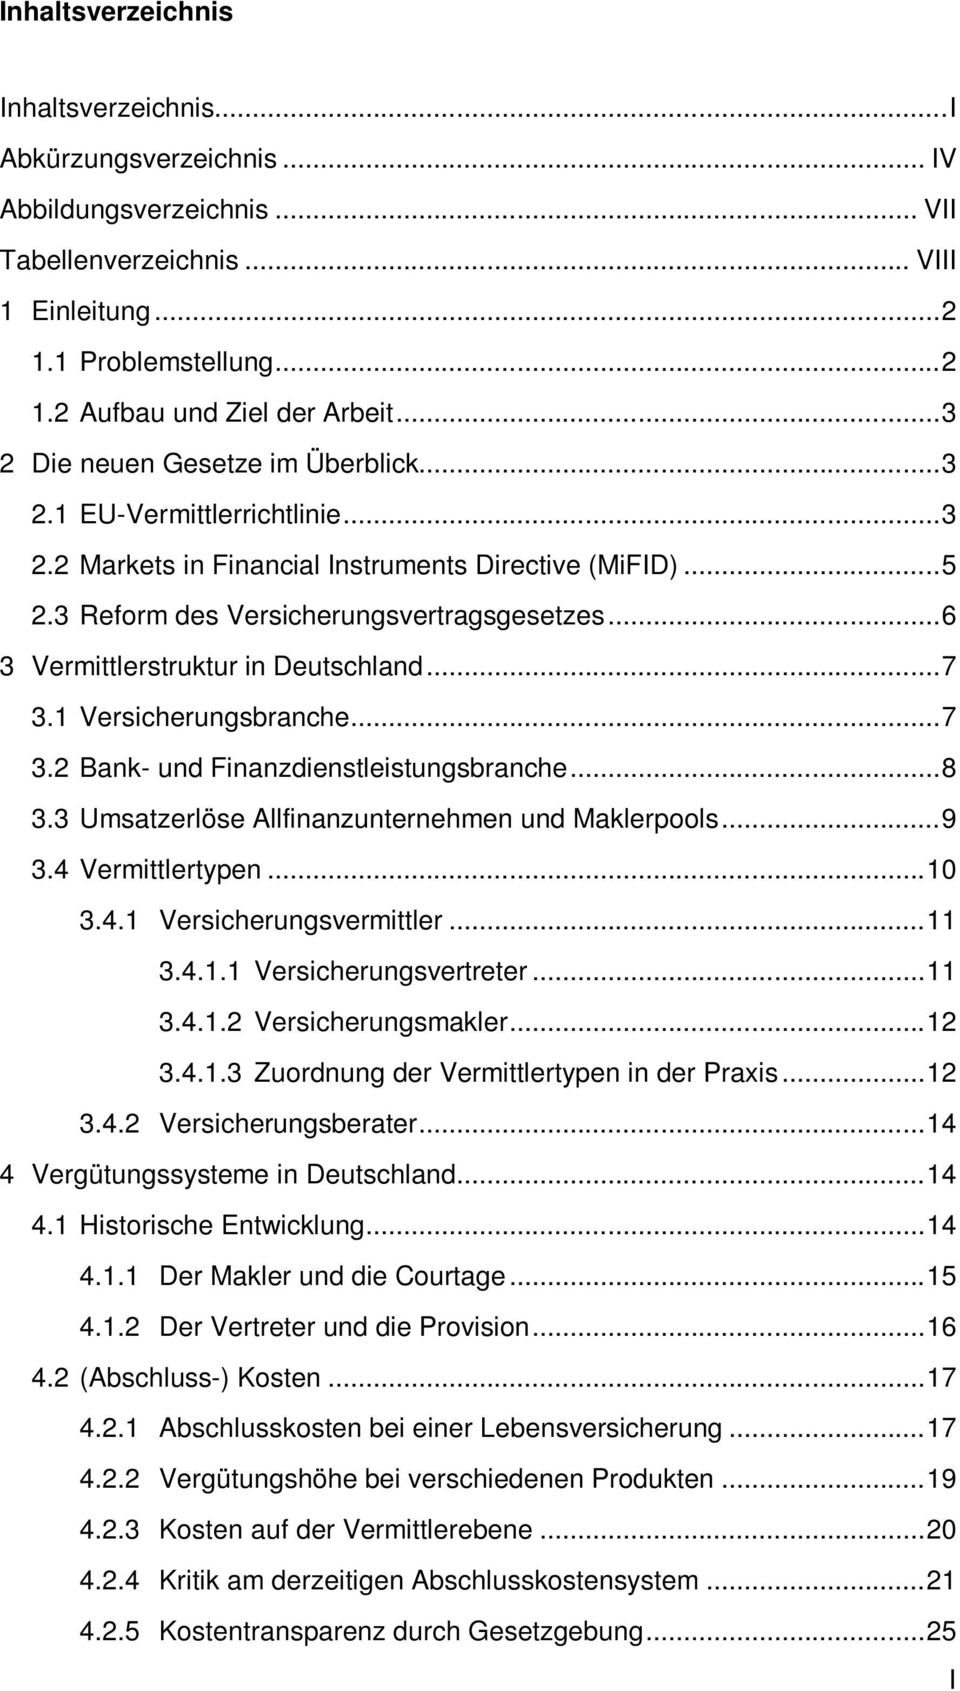 ..6 3 Vermittlerstruktur in Deutschland...7 3.1 Versicherungsbranche...7 3.2 Bank- und Finanzdienstleistungsbranche...8 3.3 Umsatzerlöse Allfinanzunternehmen und Maklerpools...9 3.4 Vermittlertypen.